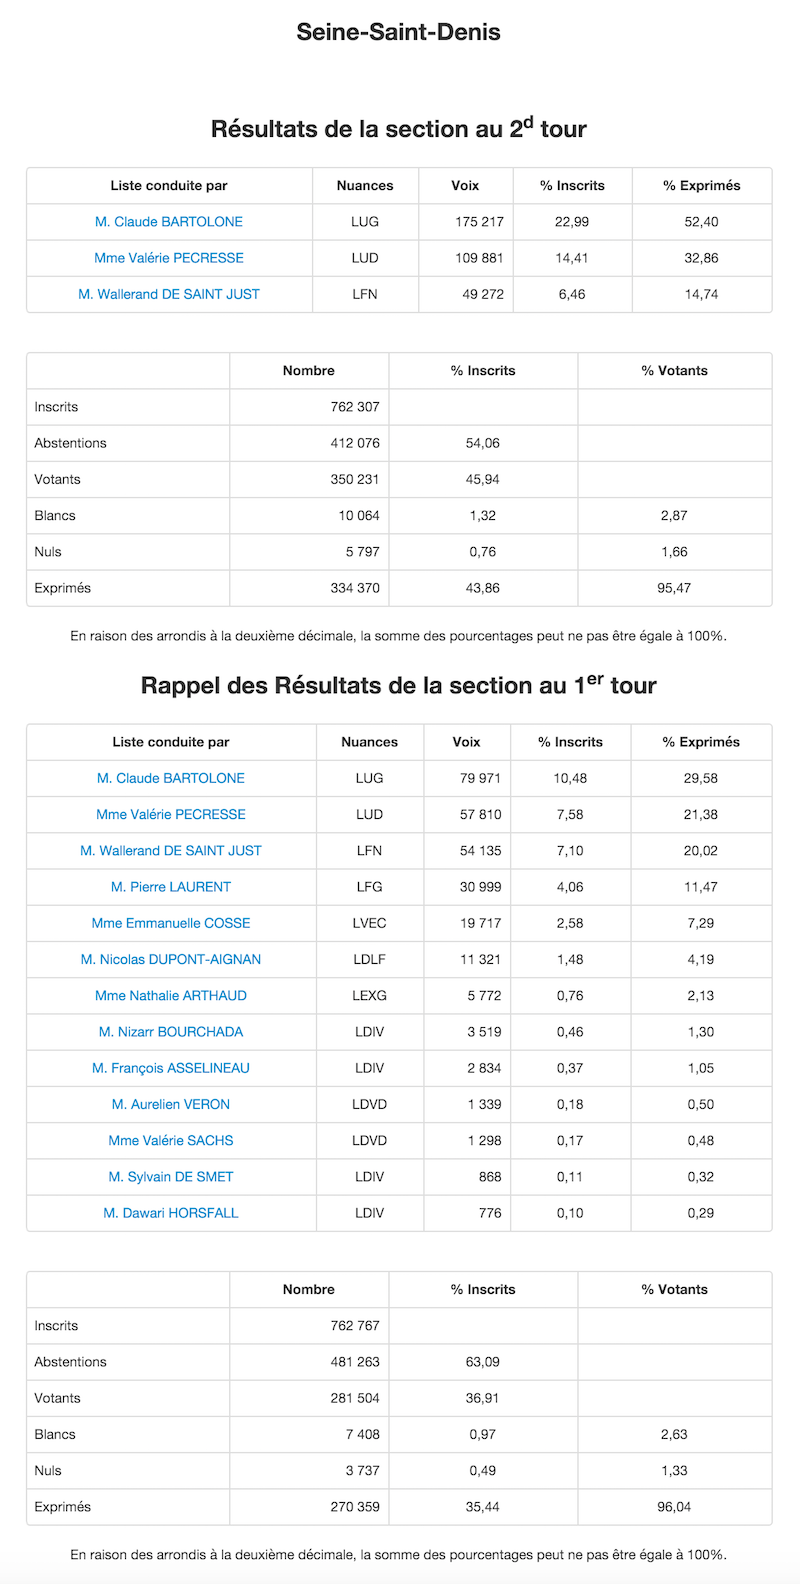 Régionales 2015 - 2nd et 1er tour dans la Seine Saint Denis  © Ministère de l'Intérieur